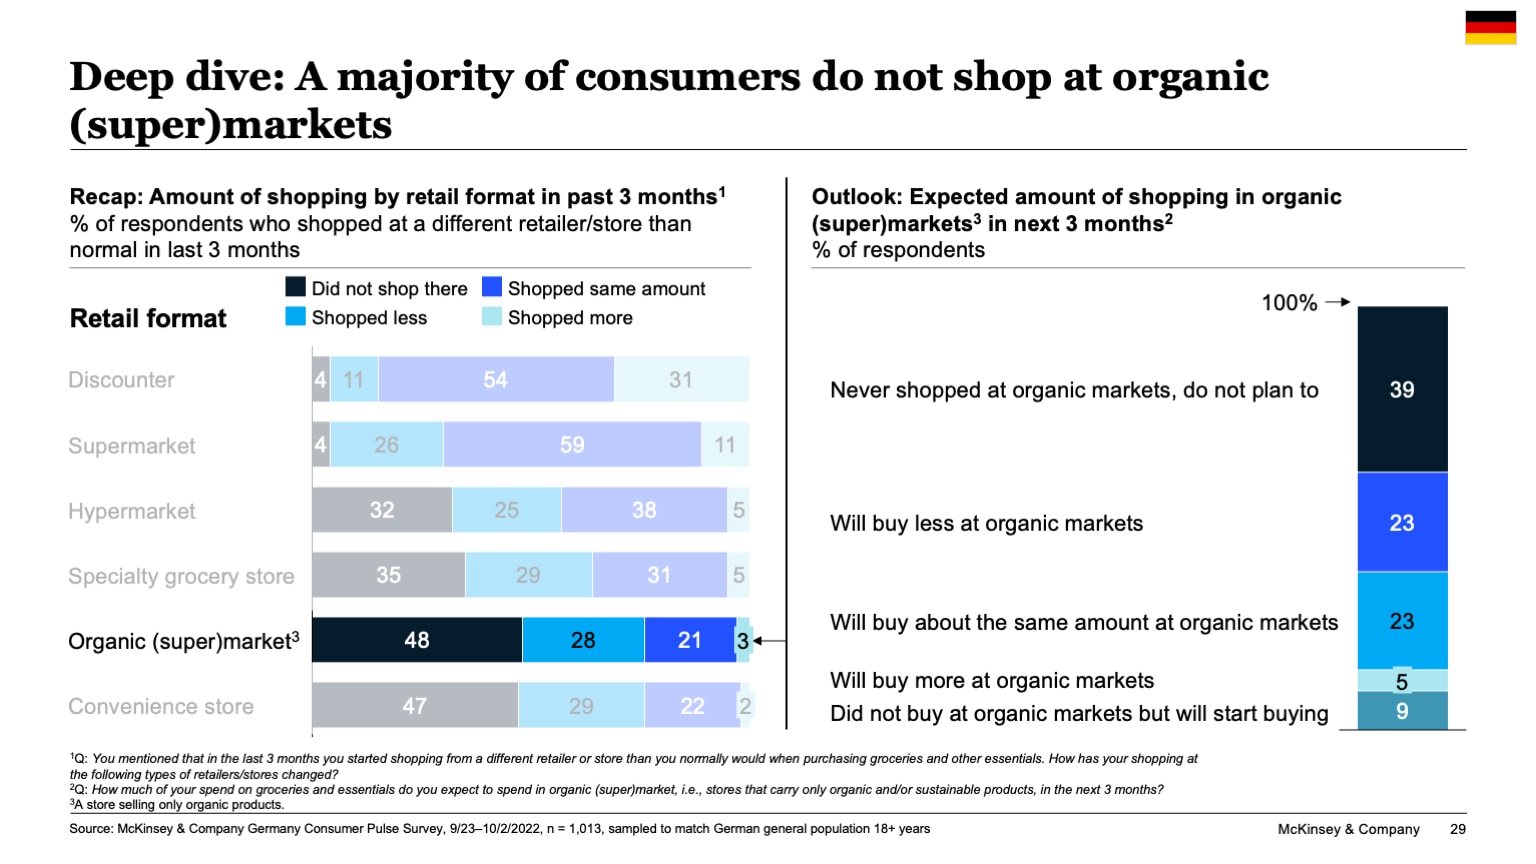 Deep dive: A majority of consumers do not shop at organic (super)markets